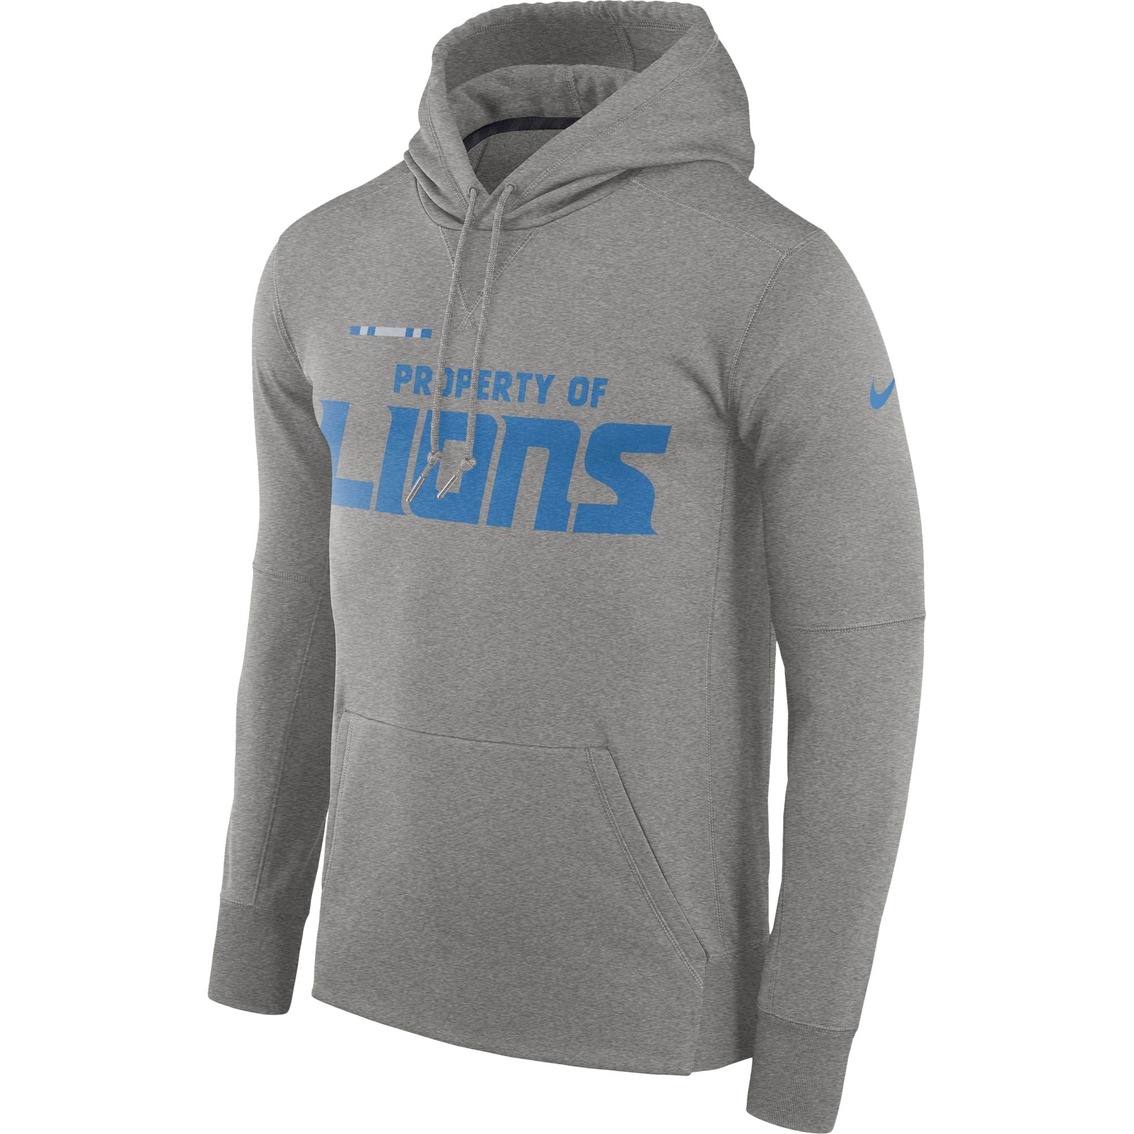 Nike Nfl Detroit Lions Therma Hoodie | Hoodies & Jackets | Clothing ...